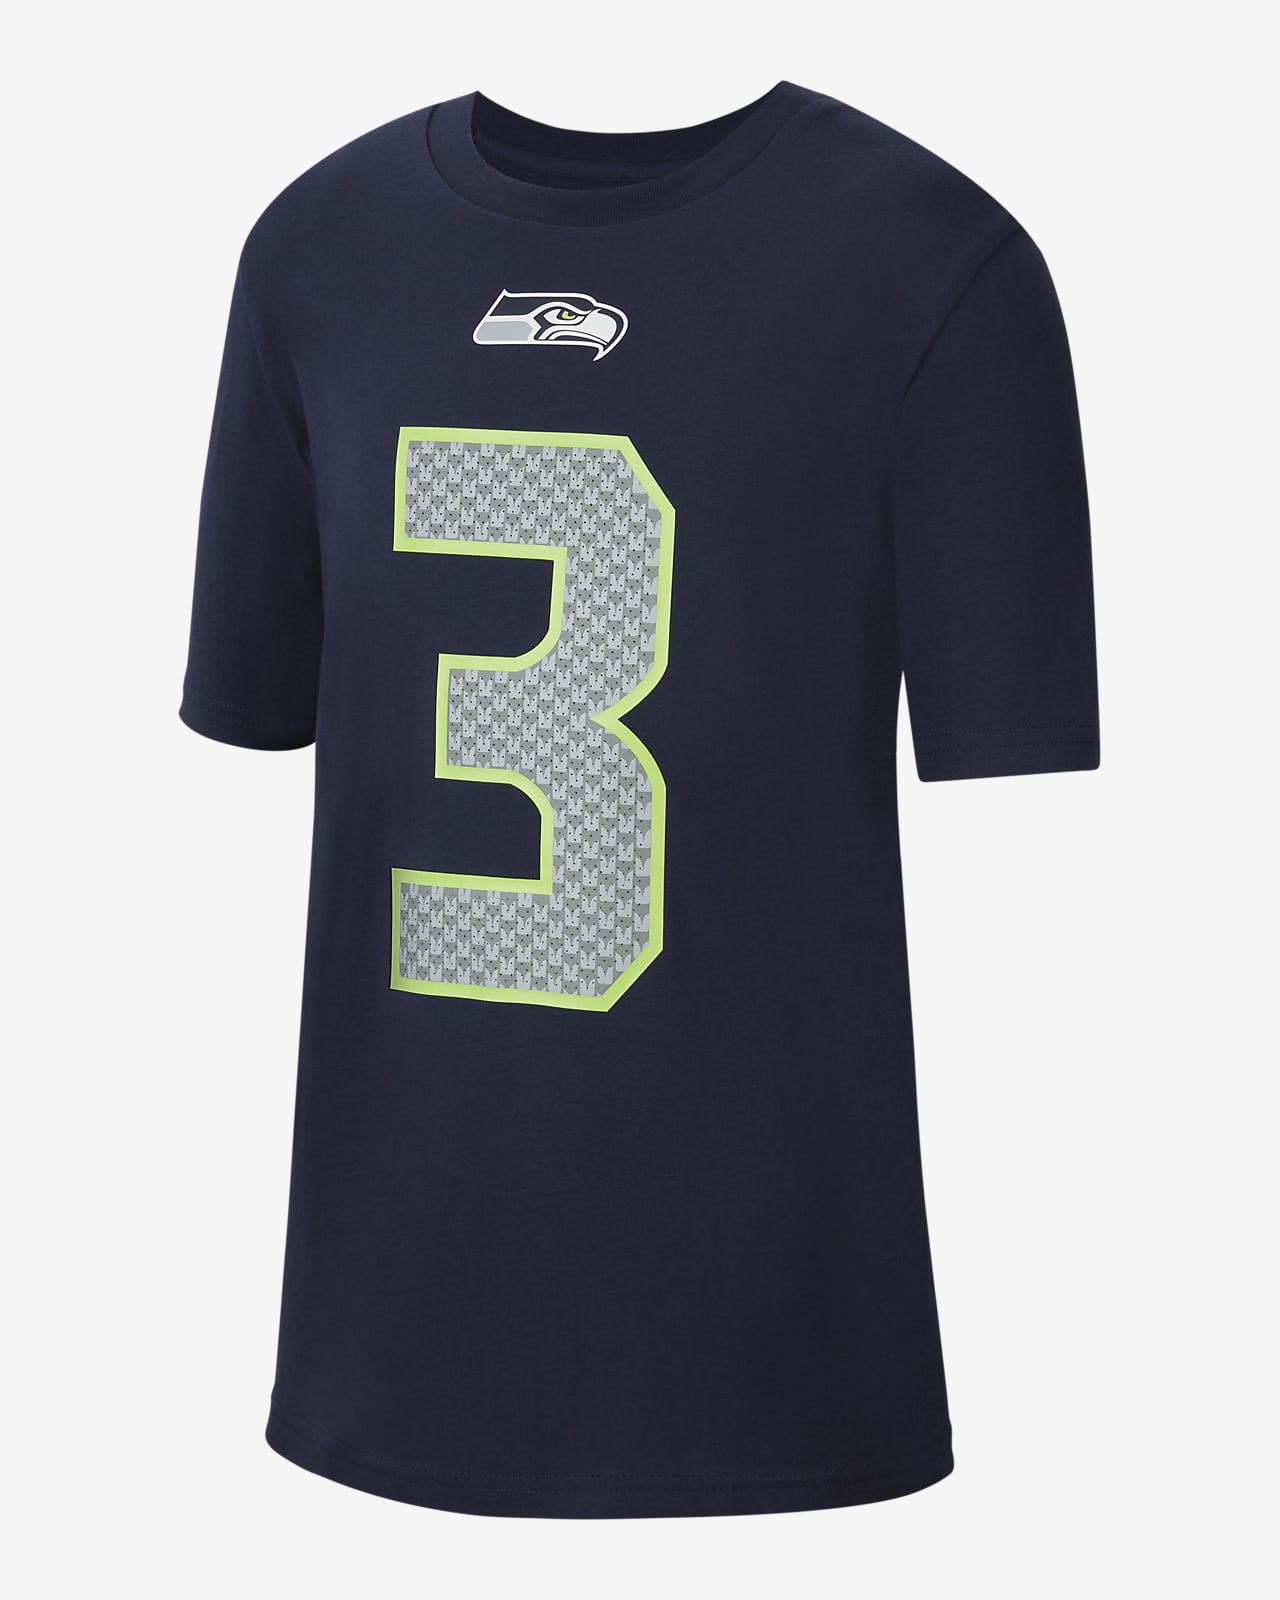 Nike (NFL Seattle Seahawks) póló nagyobb gyerekeknek